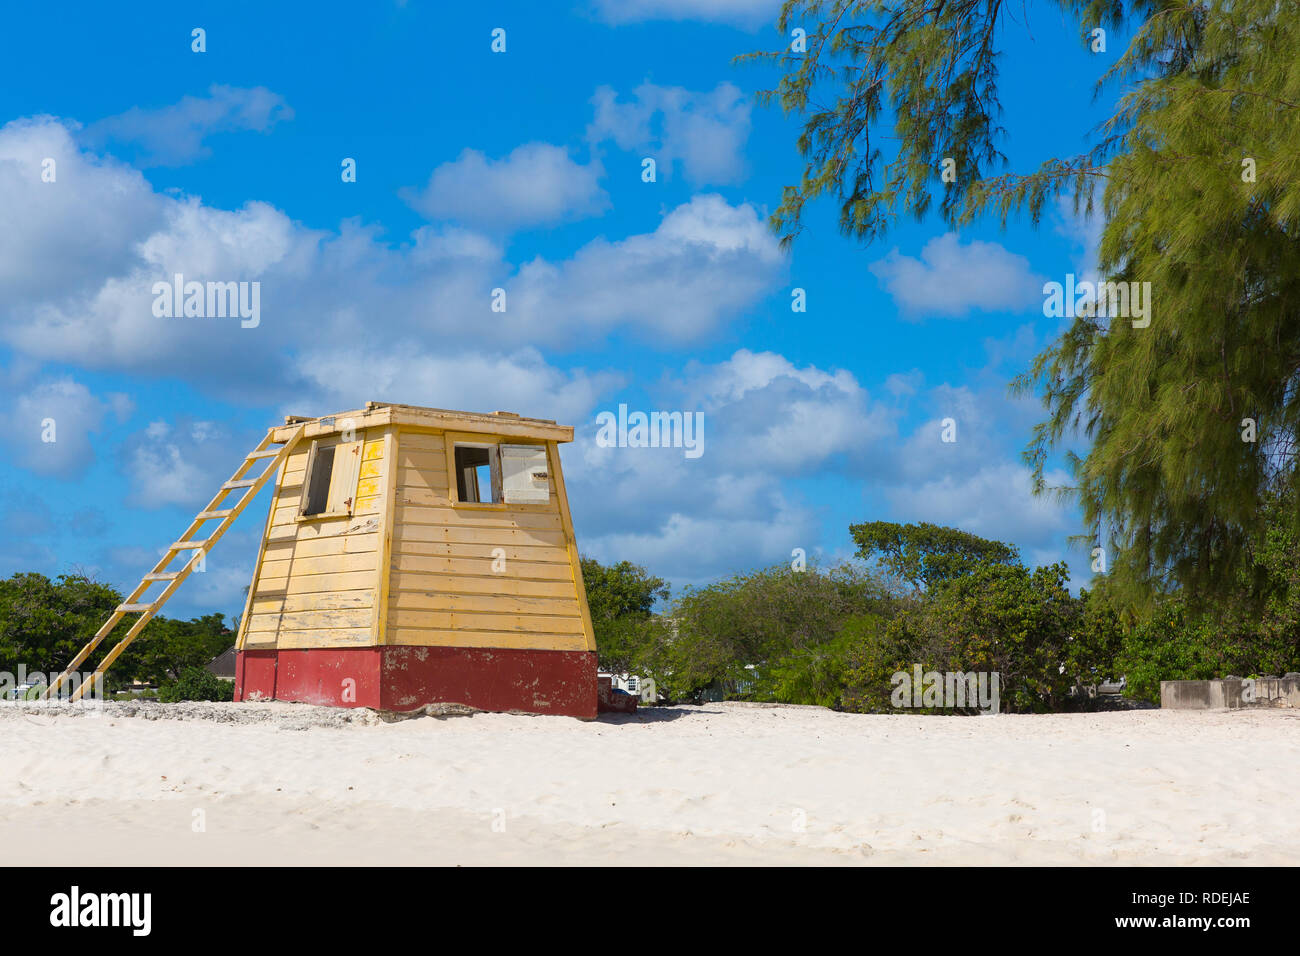 Die ursprüngliche gelb Holz- lifeguard Station auf Enterprise Beach, Barbados, gebadet in strahlend blauem Himmel mit puffy Clouds. Stockfoto